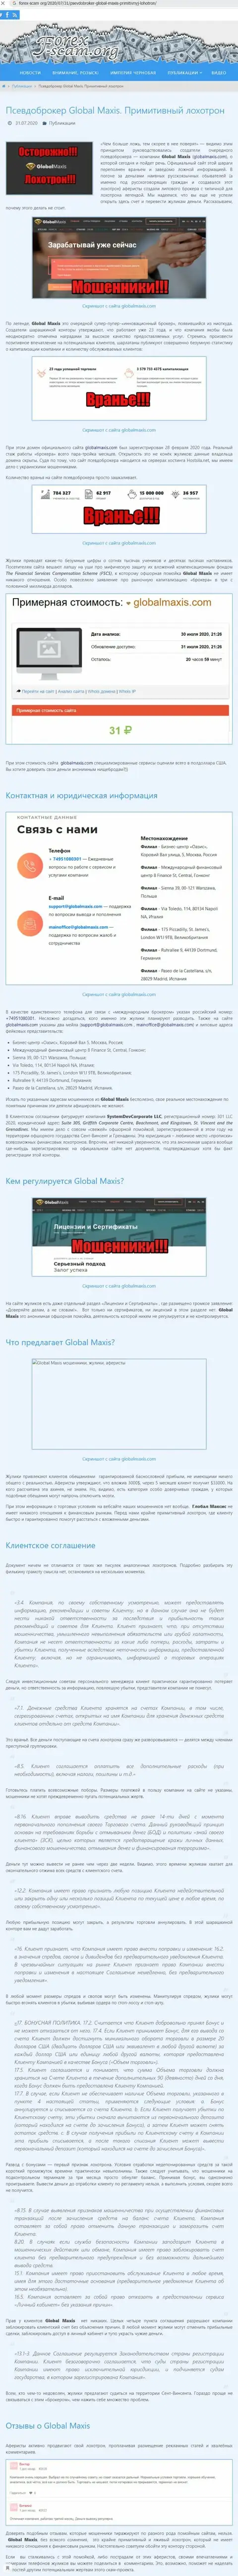 ЖУЛЬНИЧЕСТВО, ОБМАН и ВРАНЬЕ - обзор конторы Глобал Максис